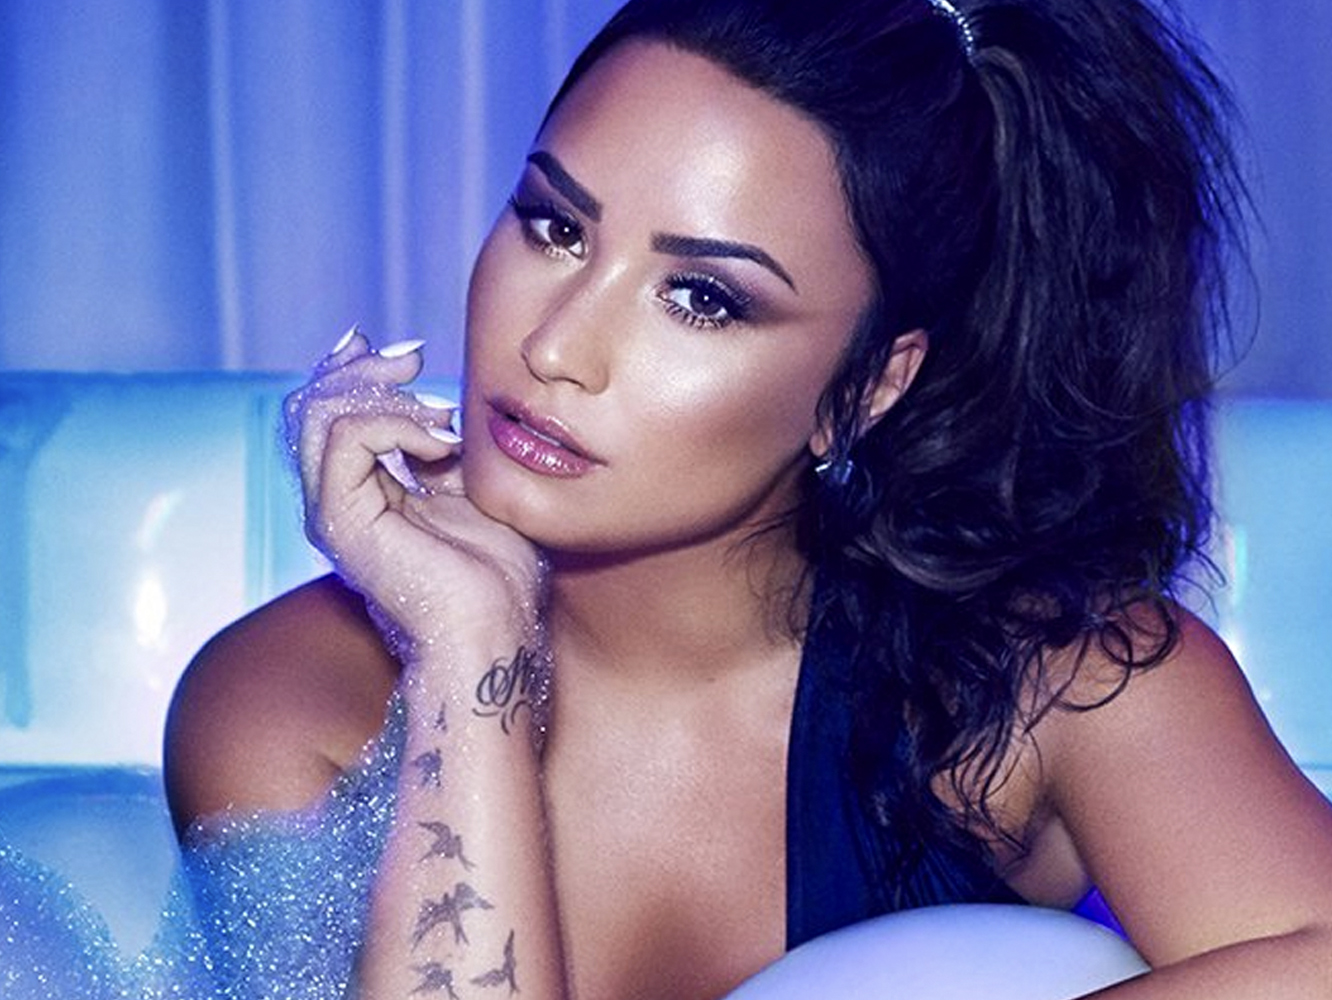  La ganadora del Premio Fanta, Demi Lovato, presenta a berrido limpio ‘Sorry Not Sorry’